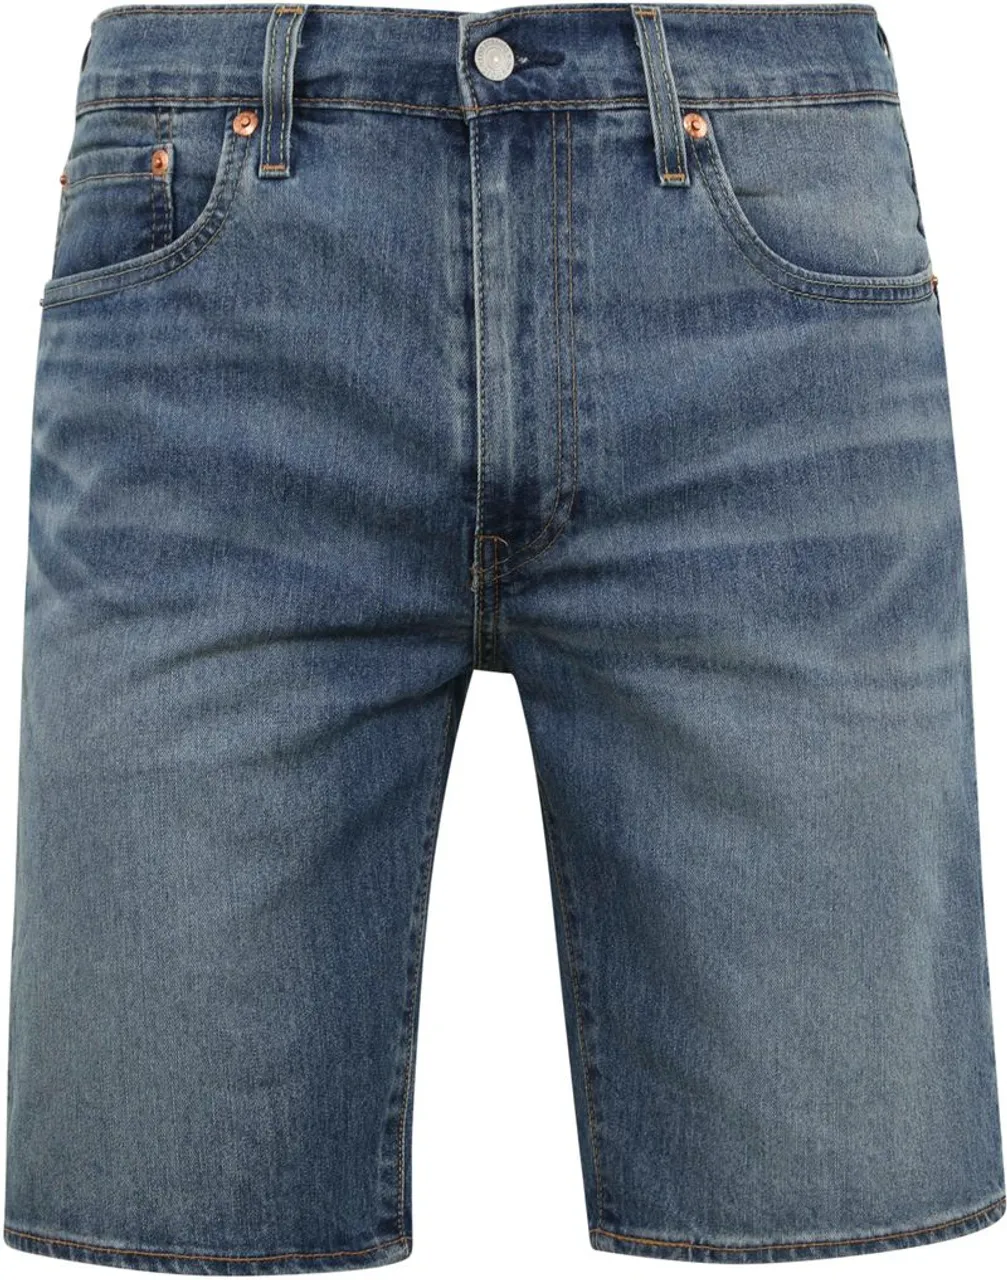 Levi's Jeans 405 Original Mid Blauw